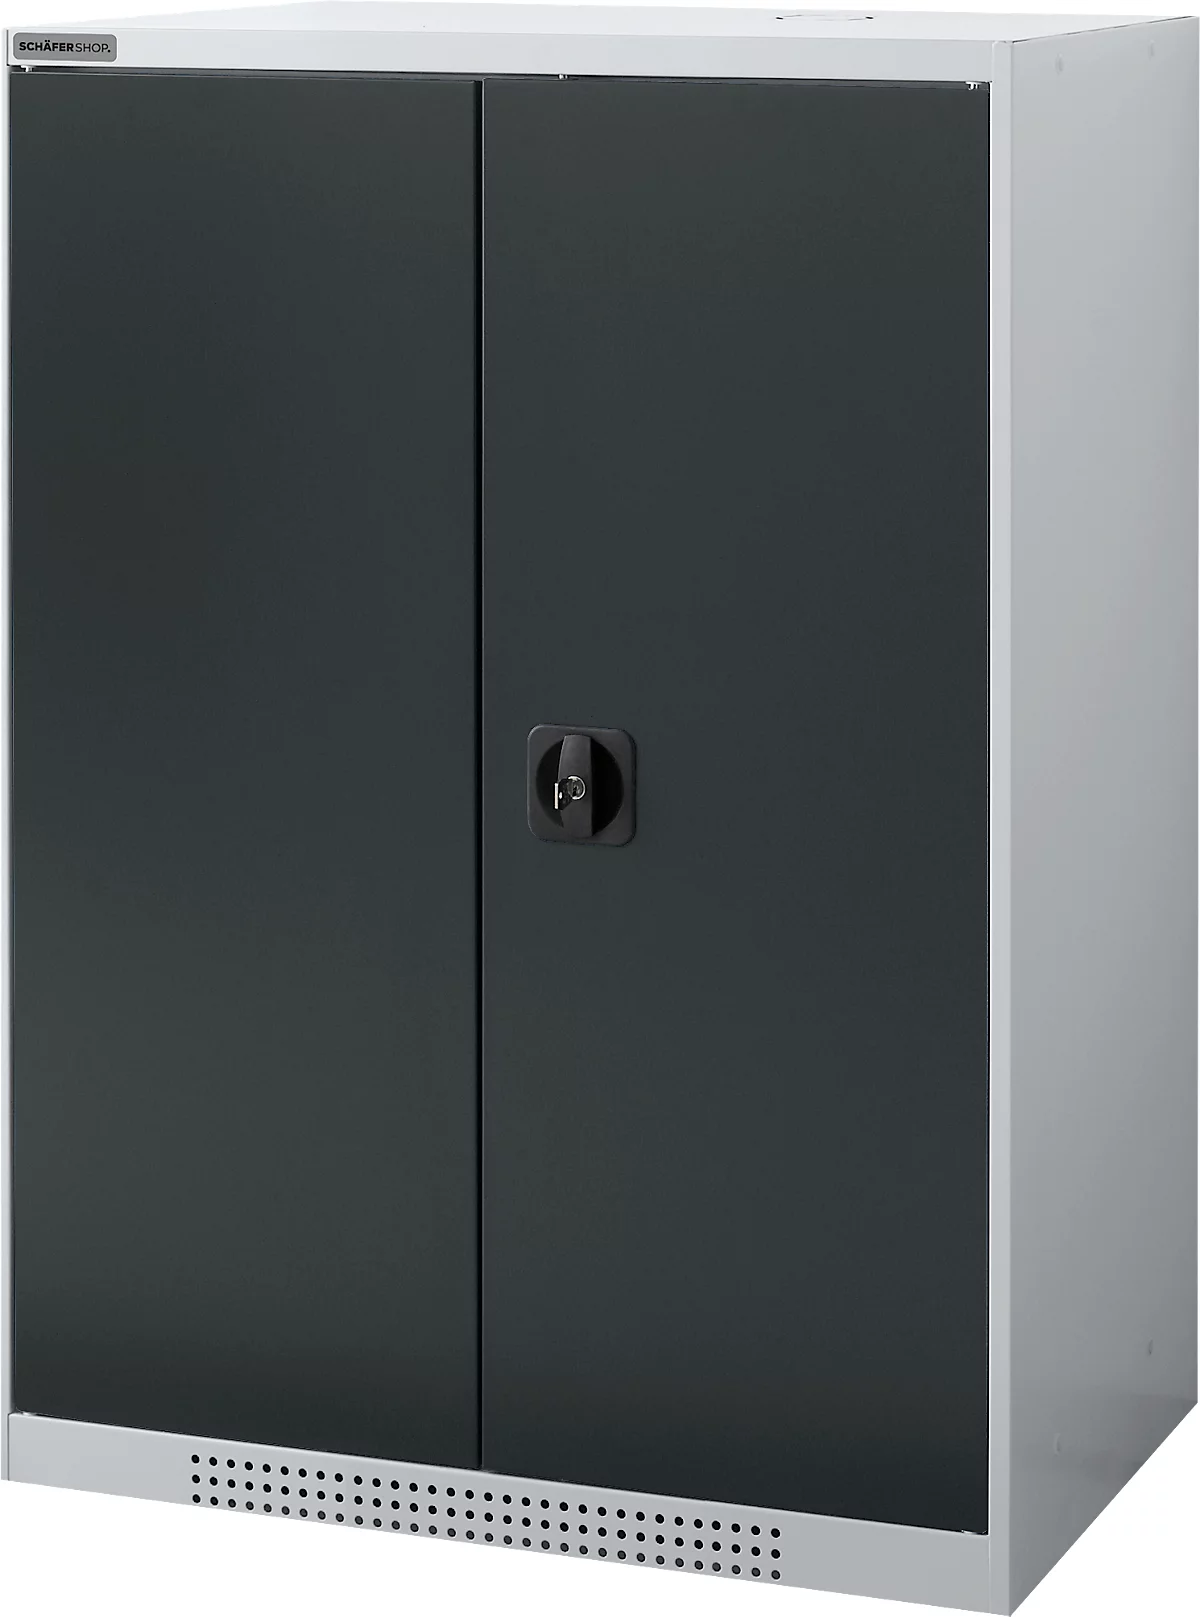 Schäfer Shop Genius armario de doble puerta FS, acero, con orificios de ventilación, A 810 x P 520 x A 1105 mm, 3 OH, aluminio blanco/gris antracita, hasta 180 kg